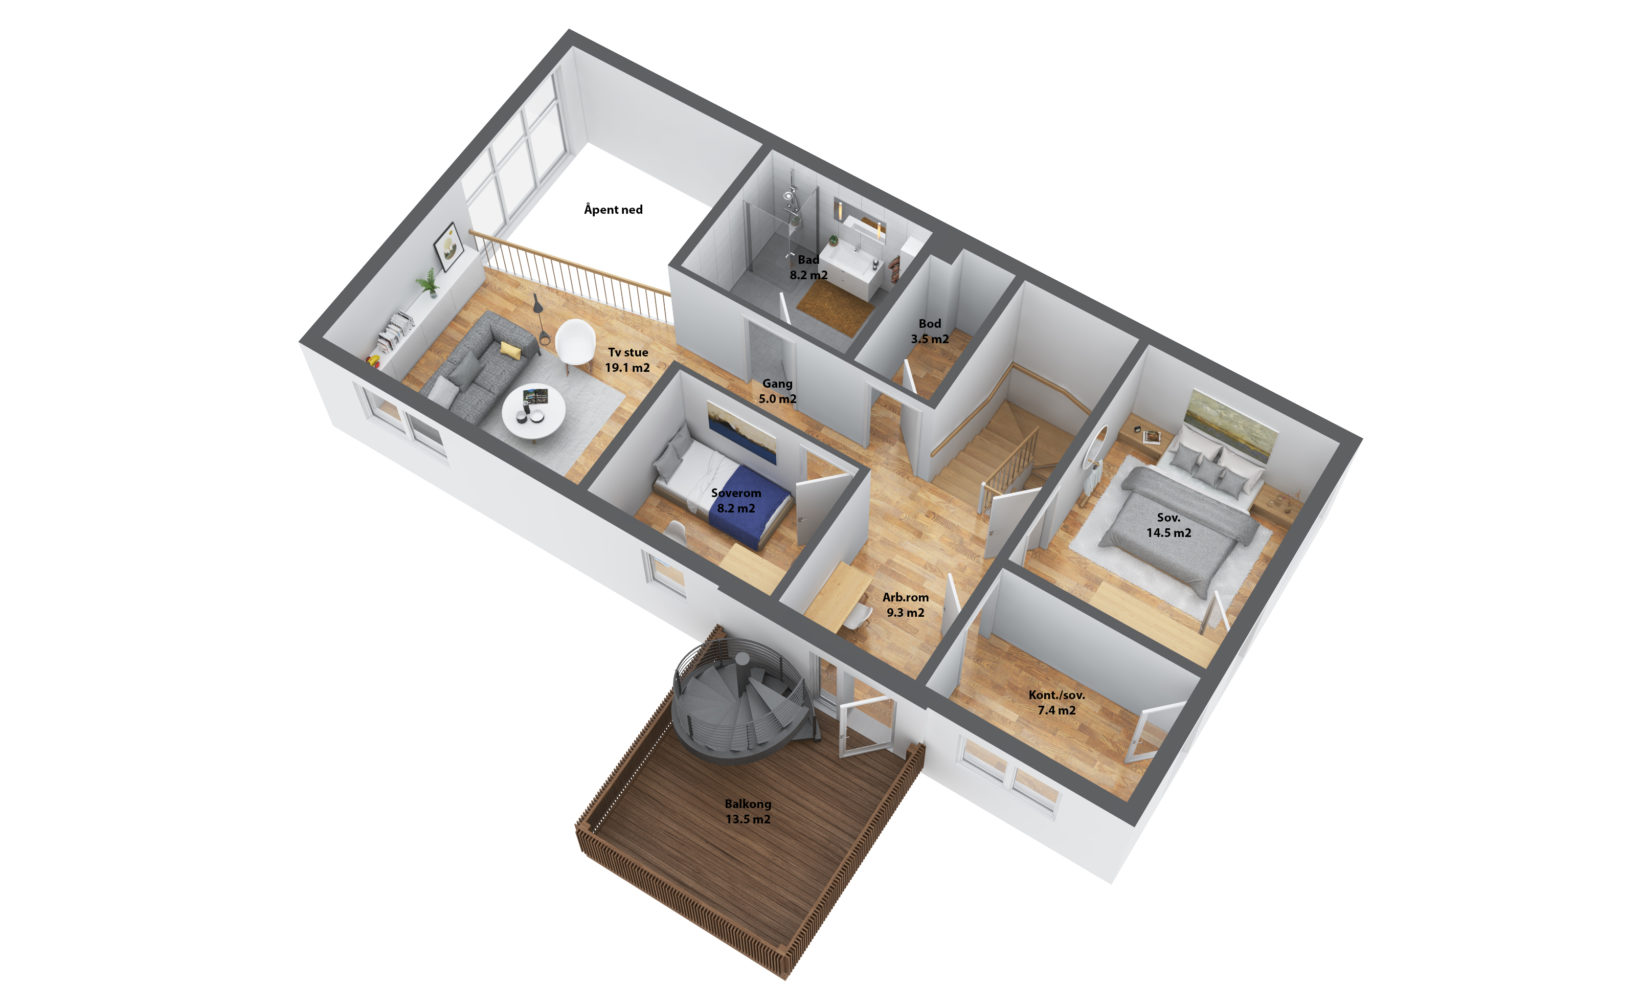 Visualisering for salg av en to-roms leilighet i 2017.